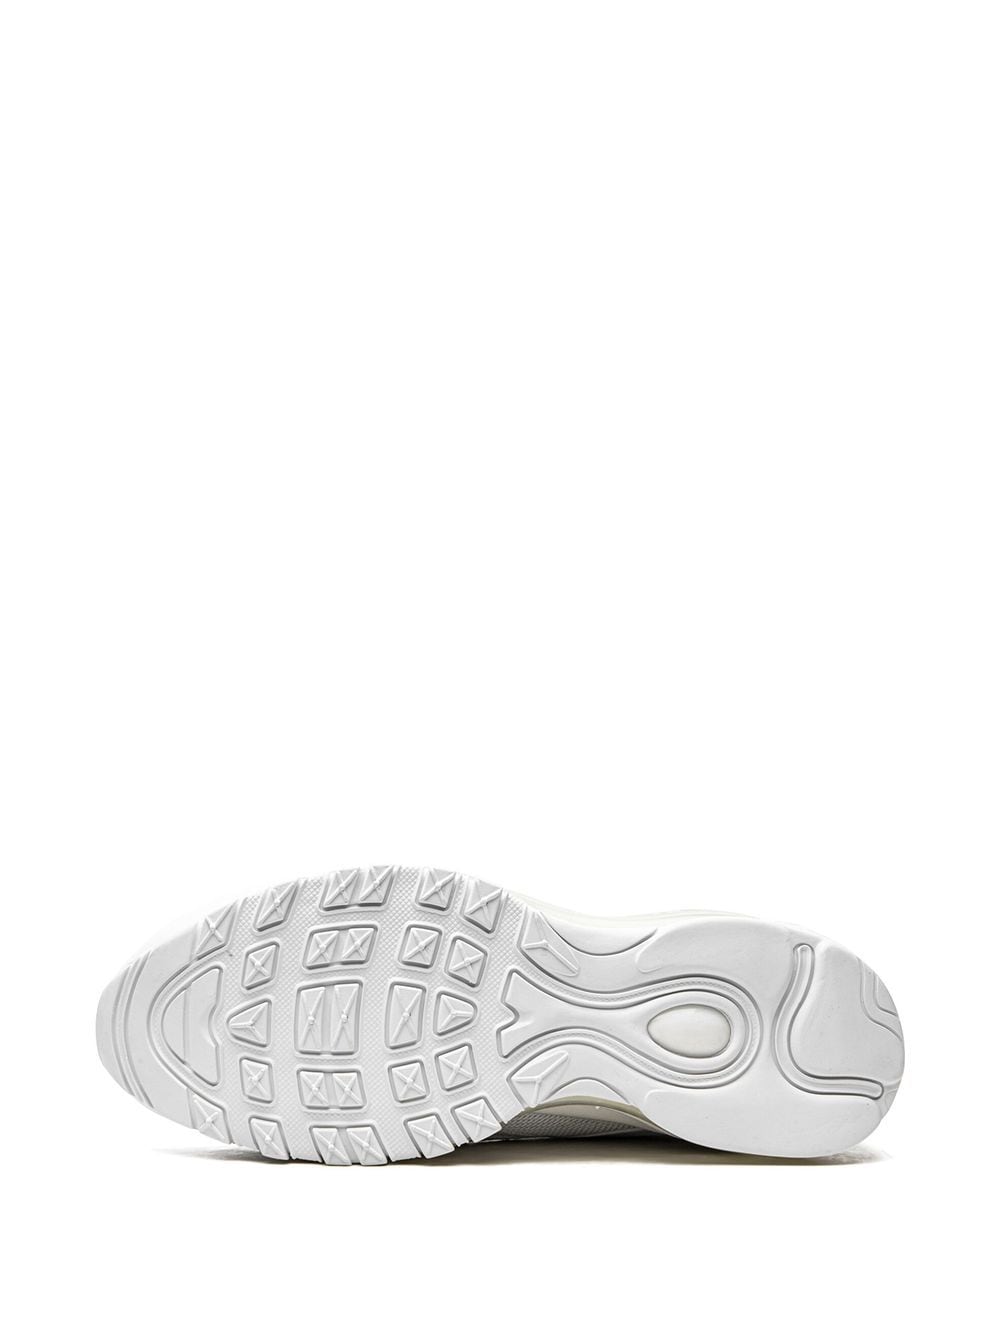 Shop Nike Air Max 97 "white/white/white" Sneakers